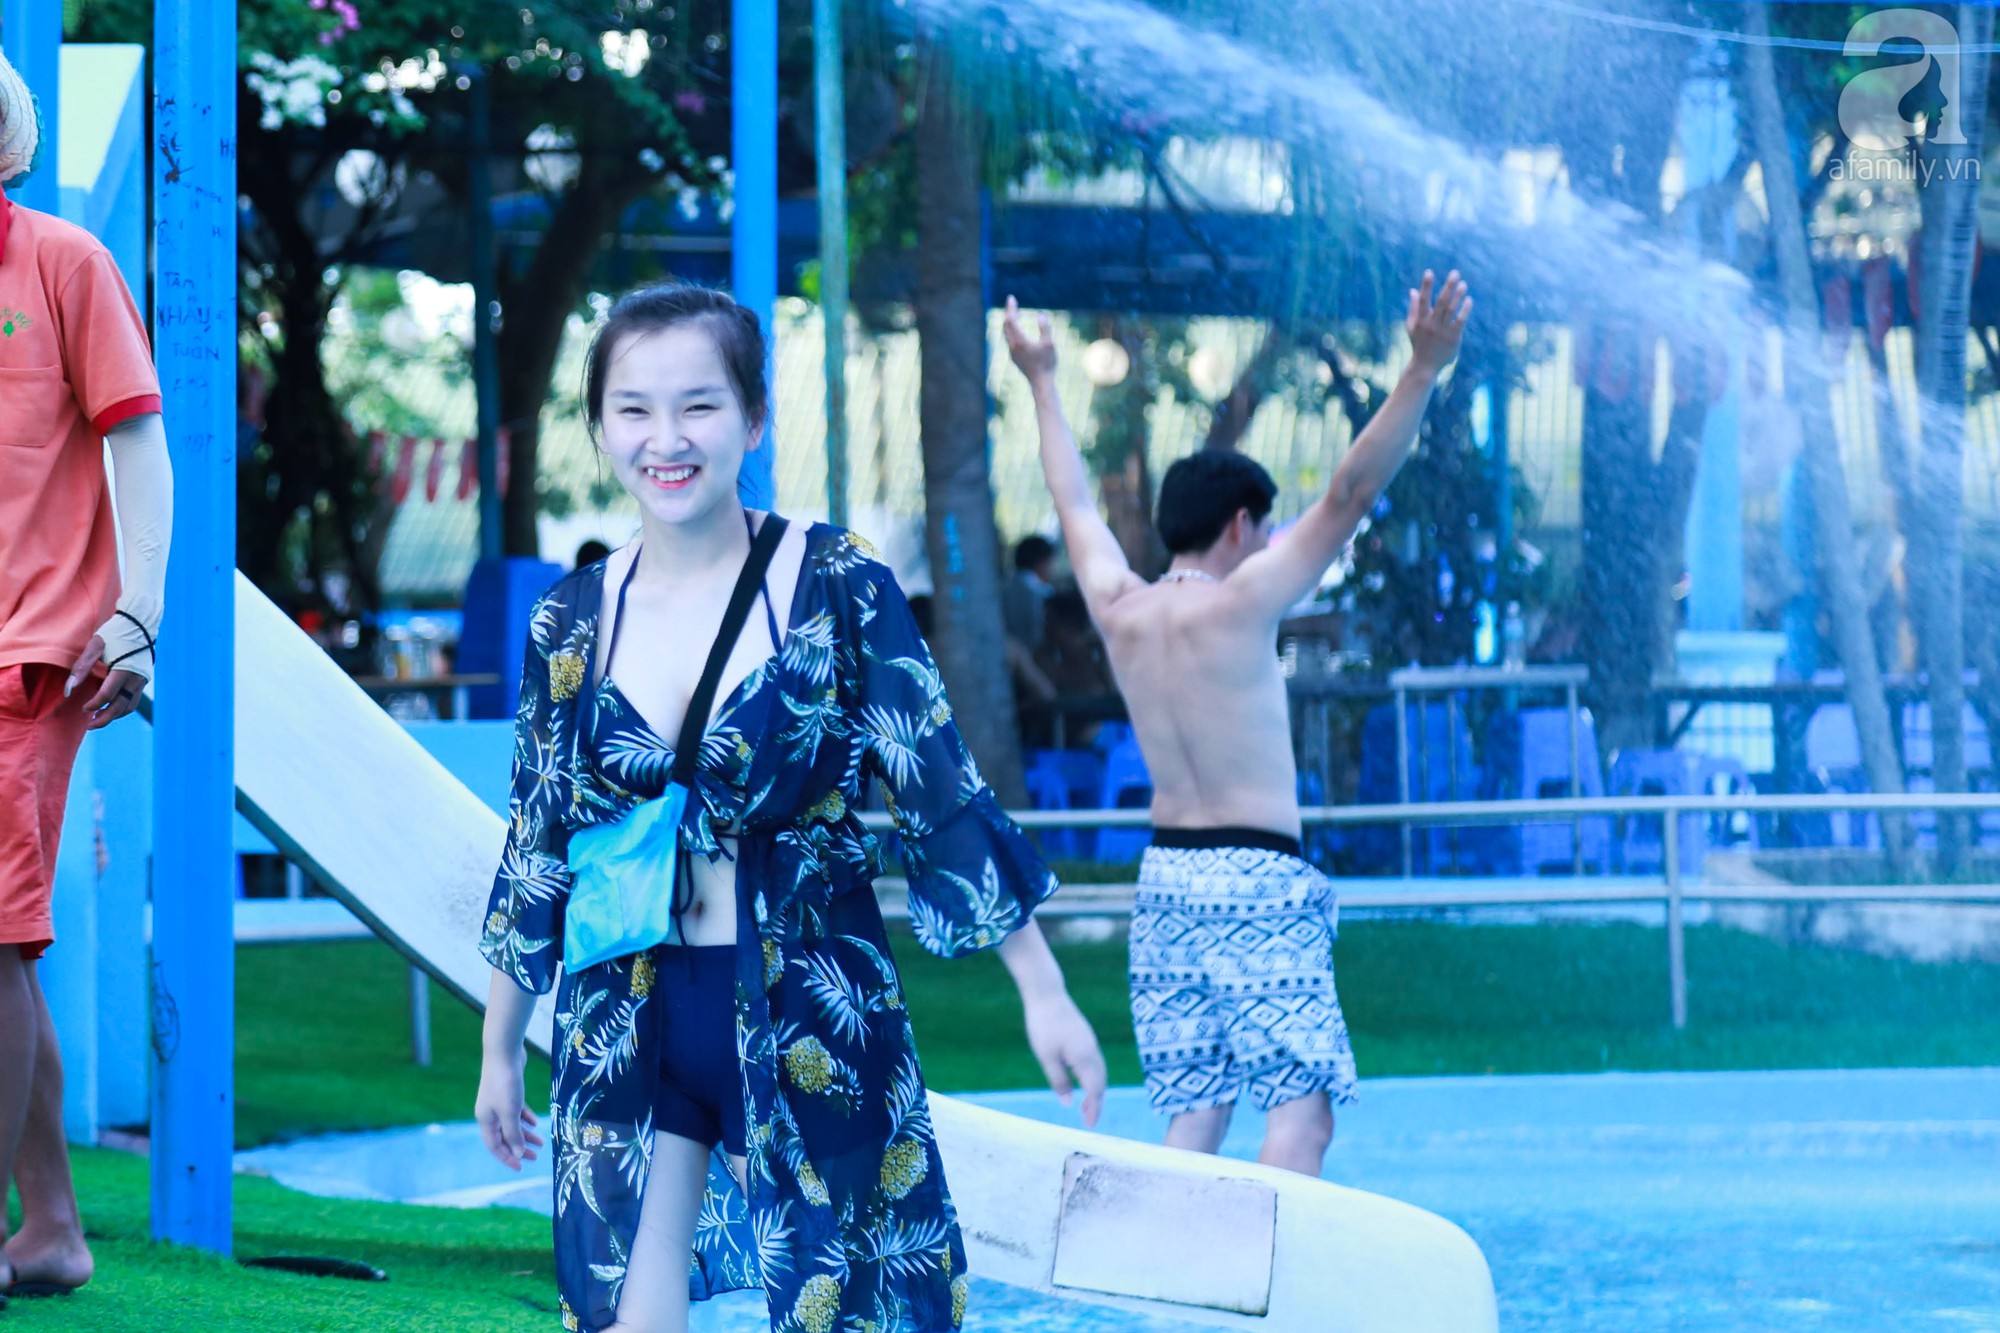 Chùm ảnh: Dân tình thỏa sức vùng vẫy giải nhiệt tại “bể bơi” lớn nhất Hà Nội - Ảnh 11.